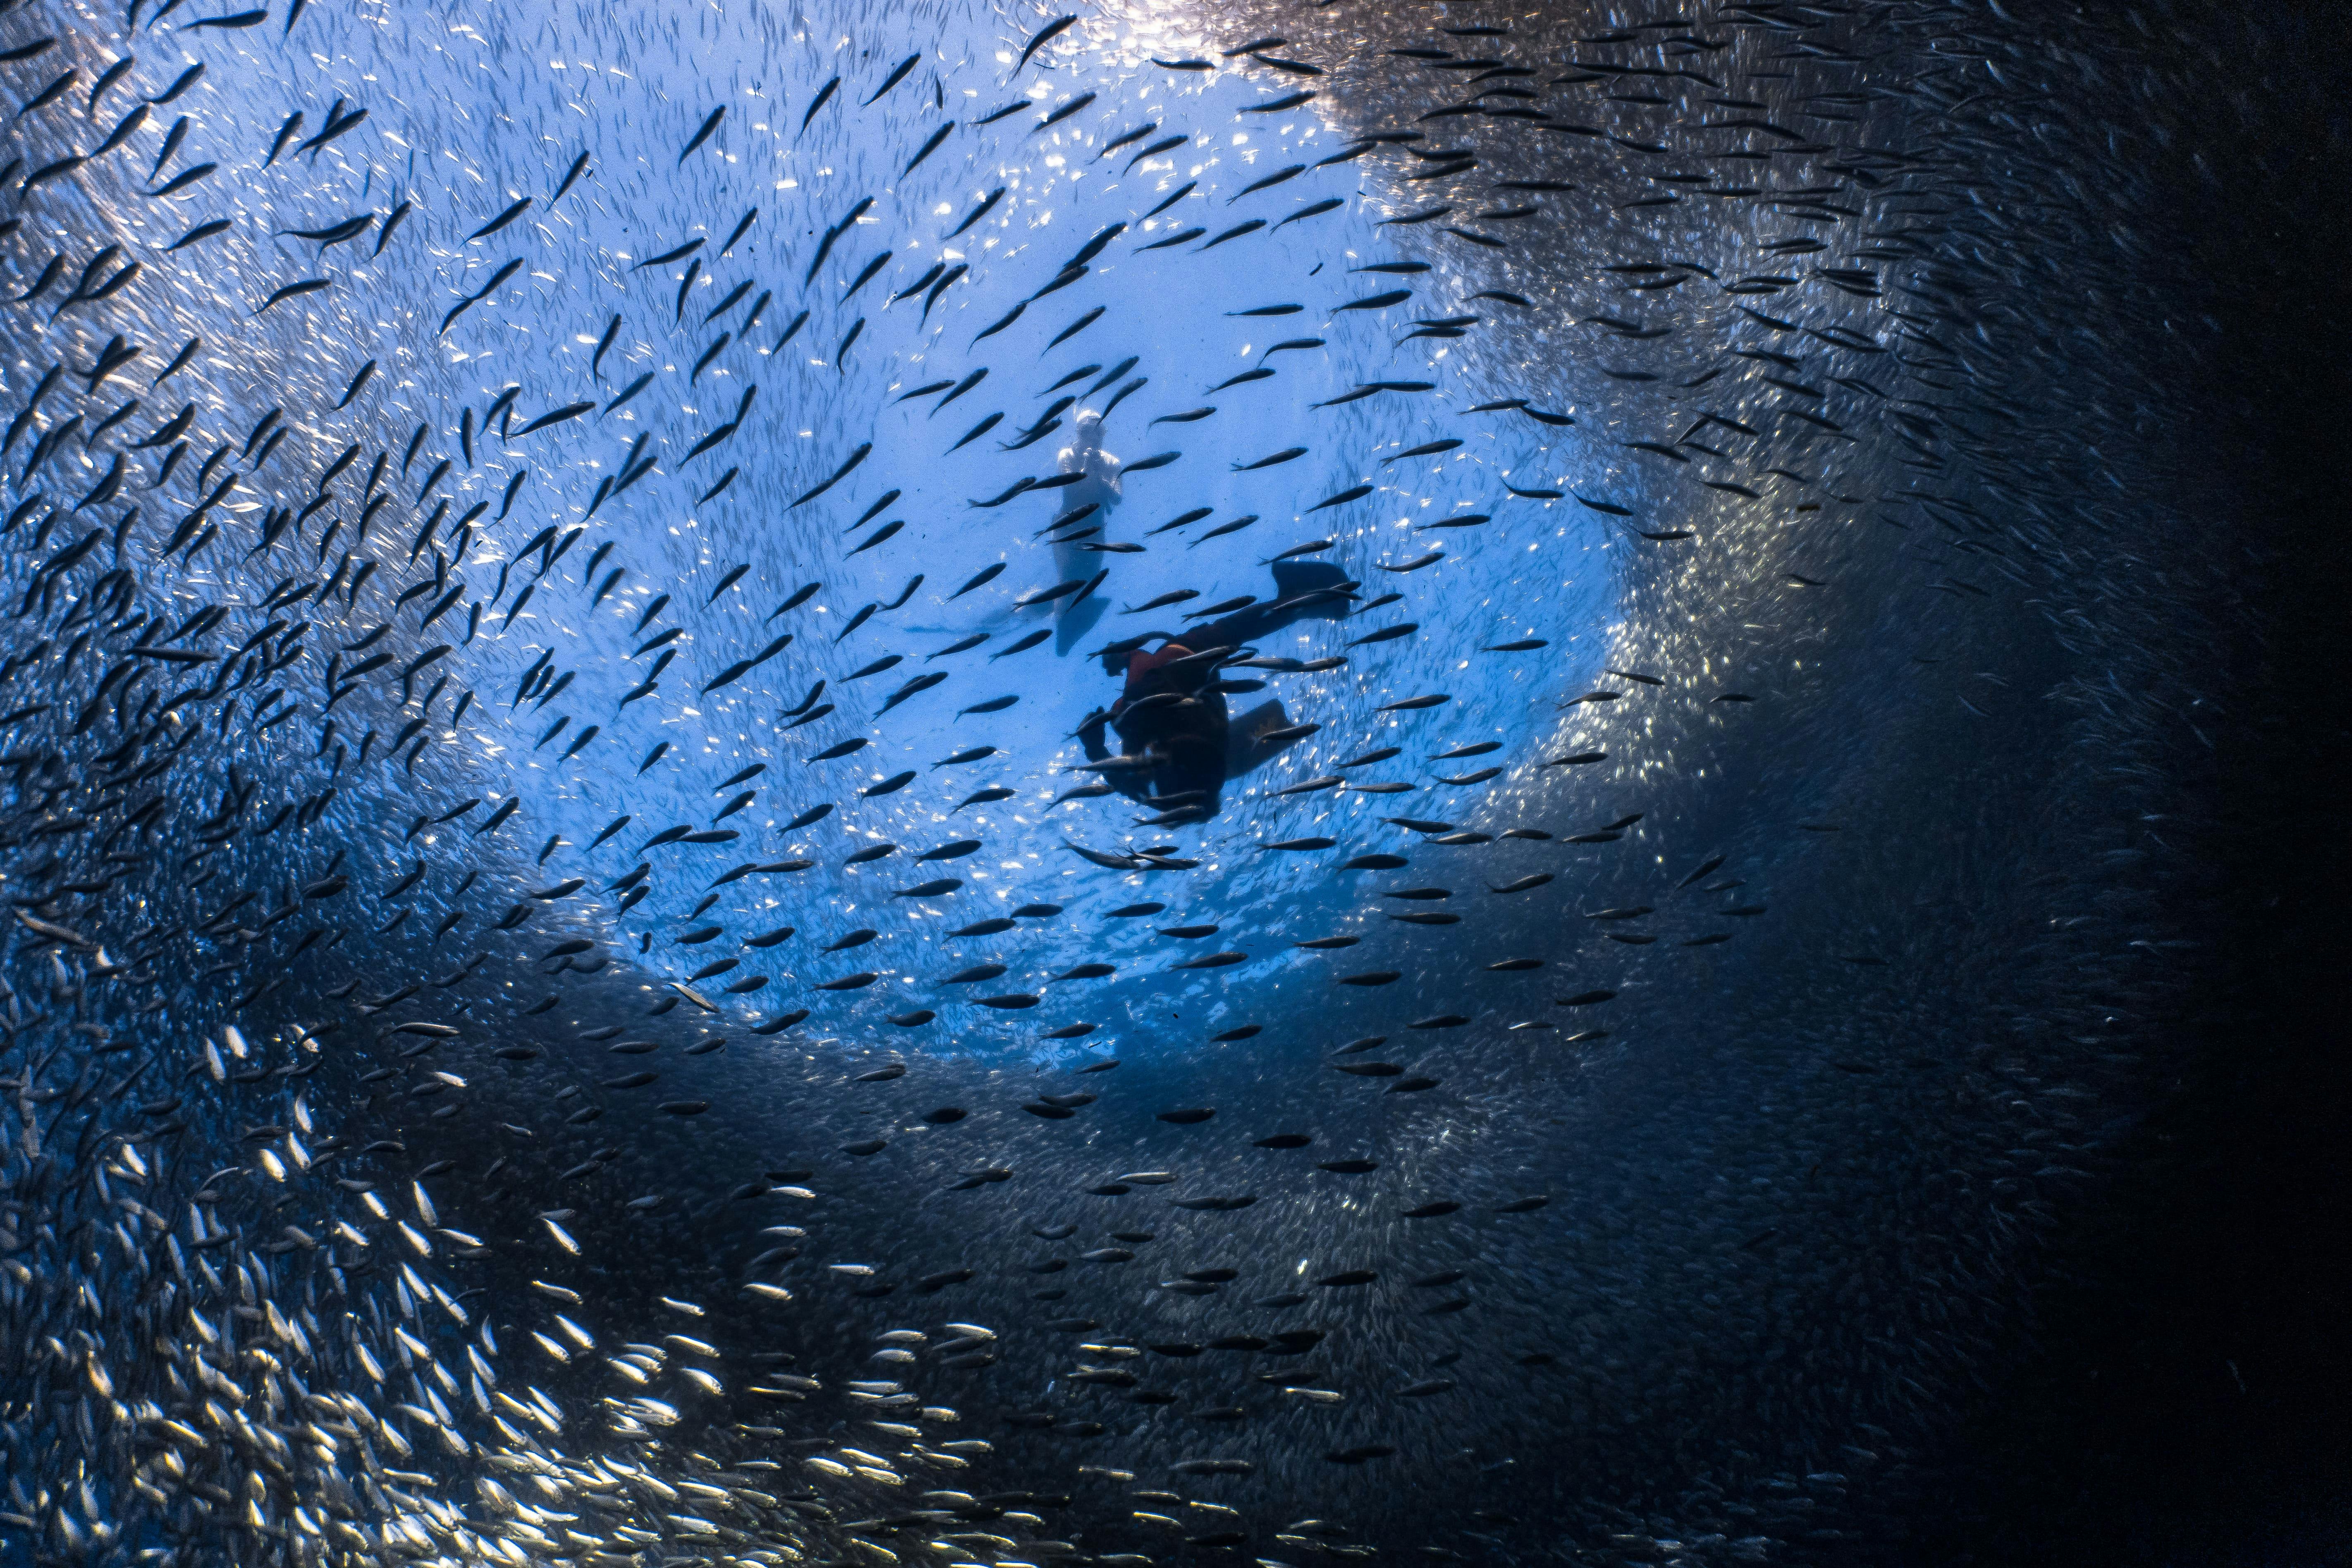 A diver capturing the beautiful sardine run in Cebu